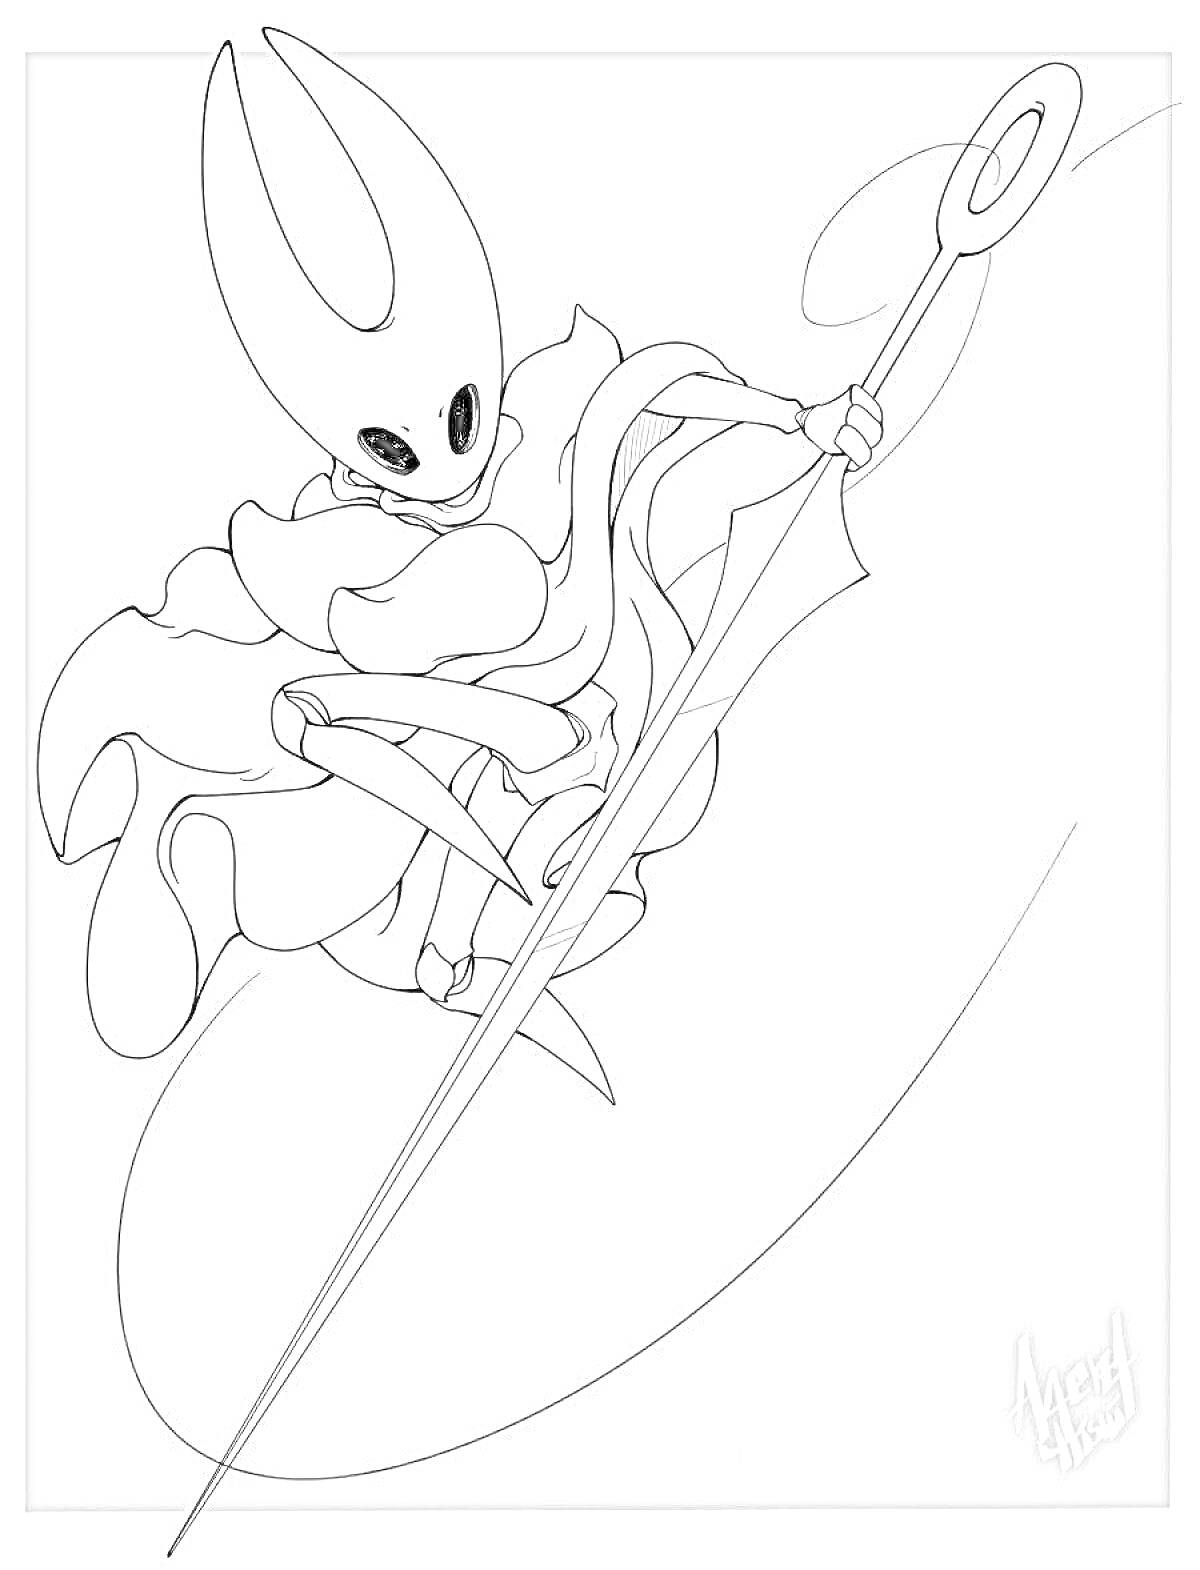 Персонаж Hollow Knight в прыжке с длинным мечом